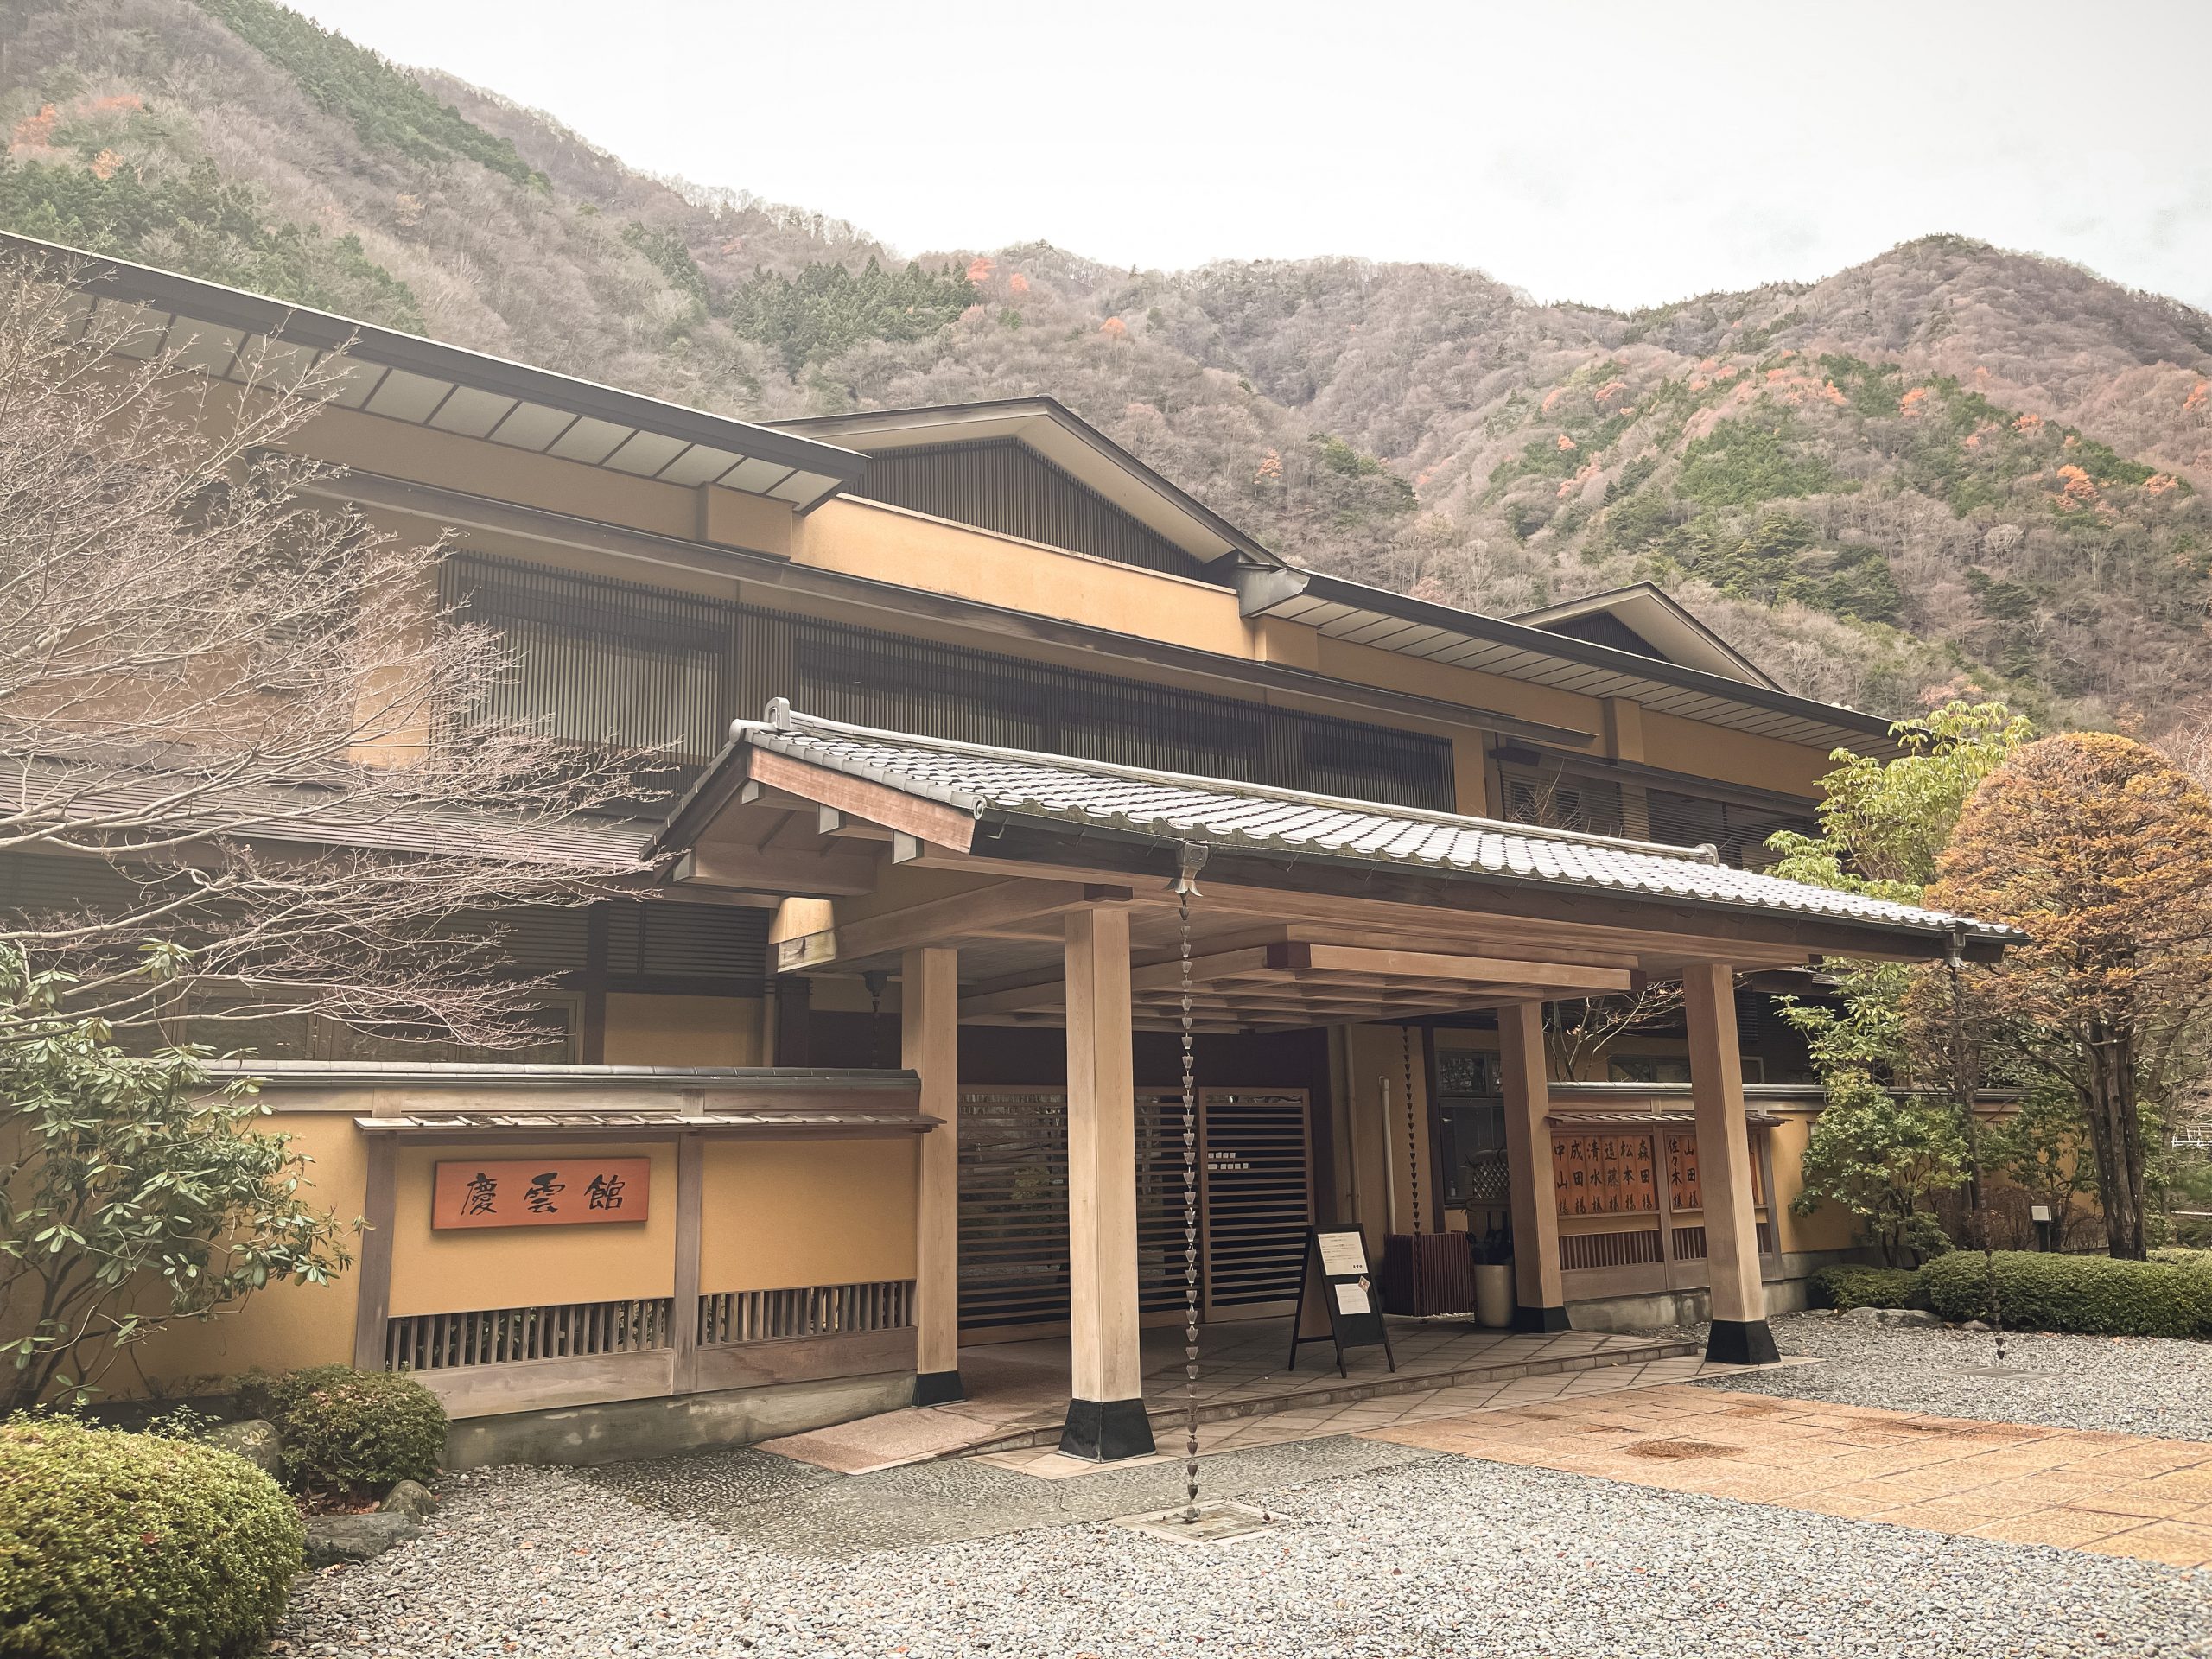 The main entrance at Nishiyama onsen